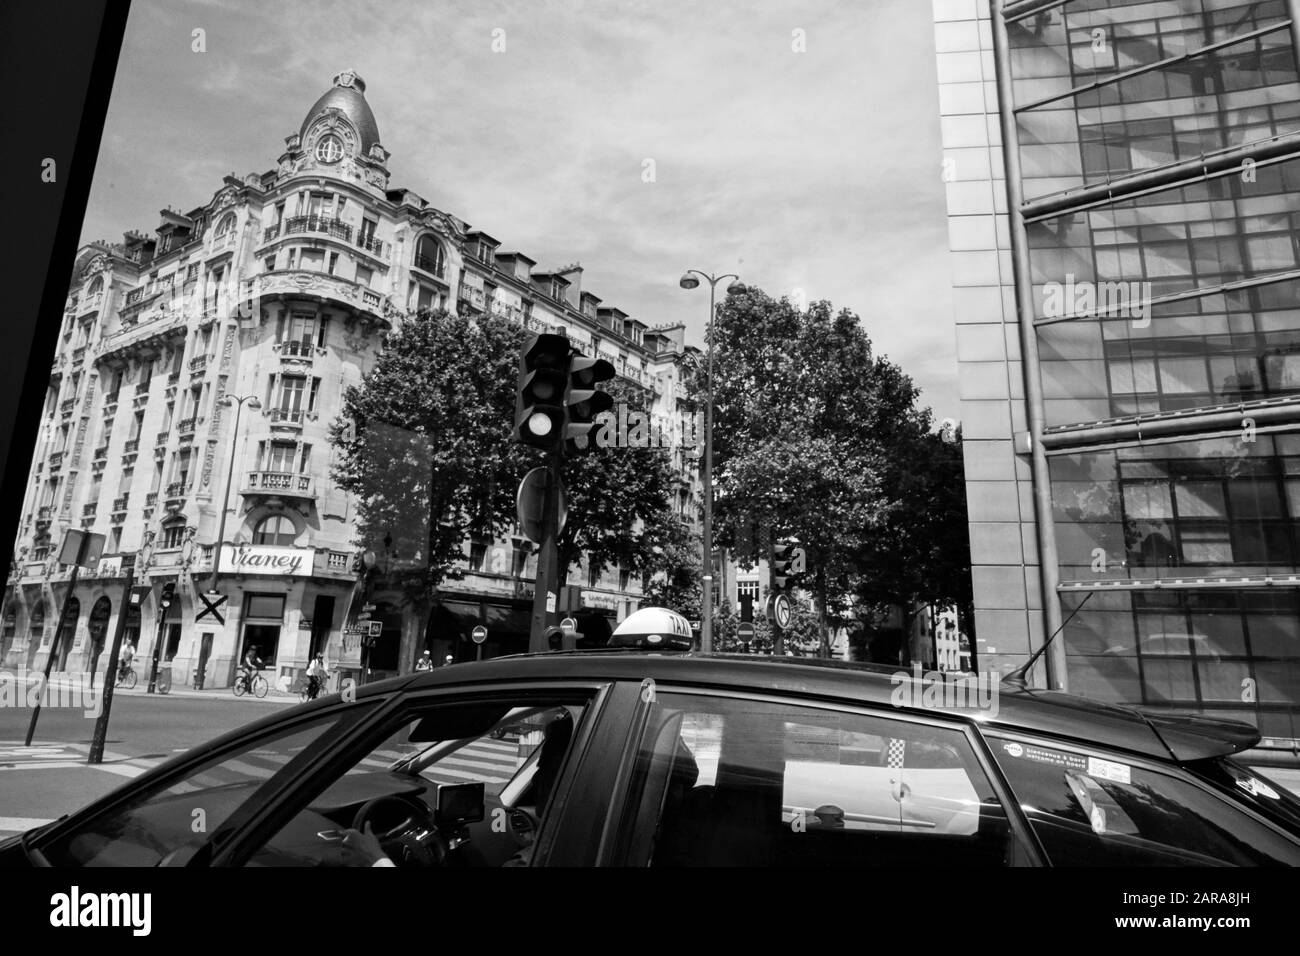 Rue avec vieux et nouveau bâtiment, signal et taxi, Paris, France, Europe Banque D'Images